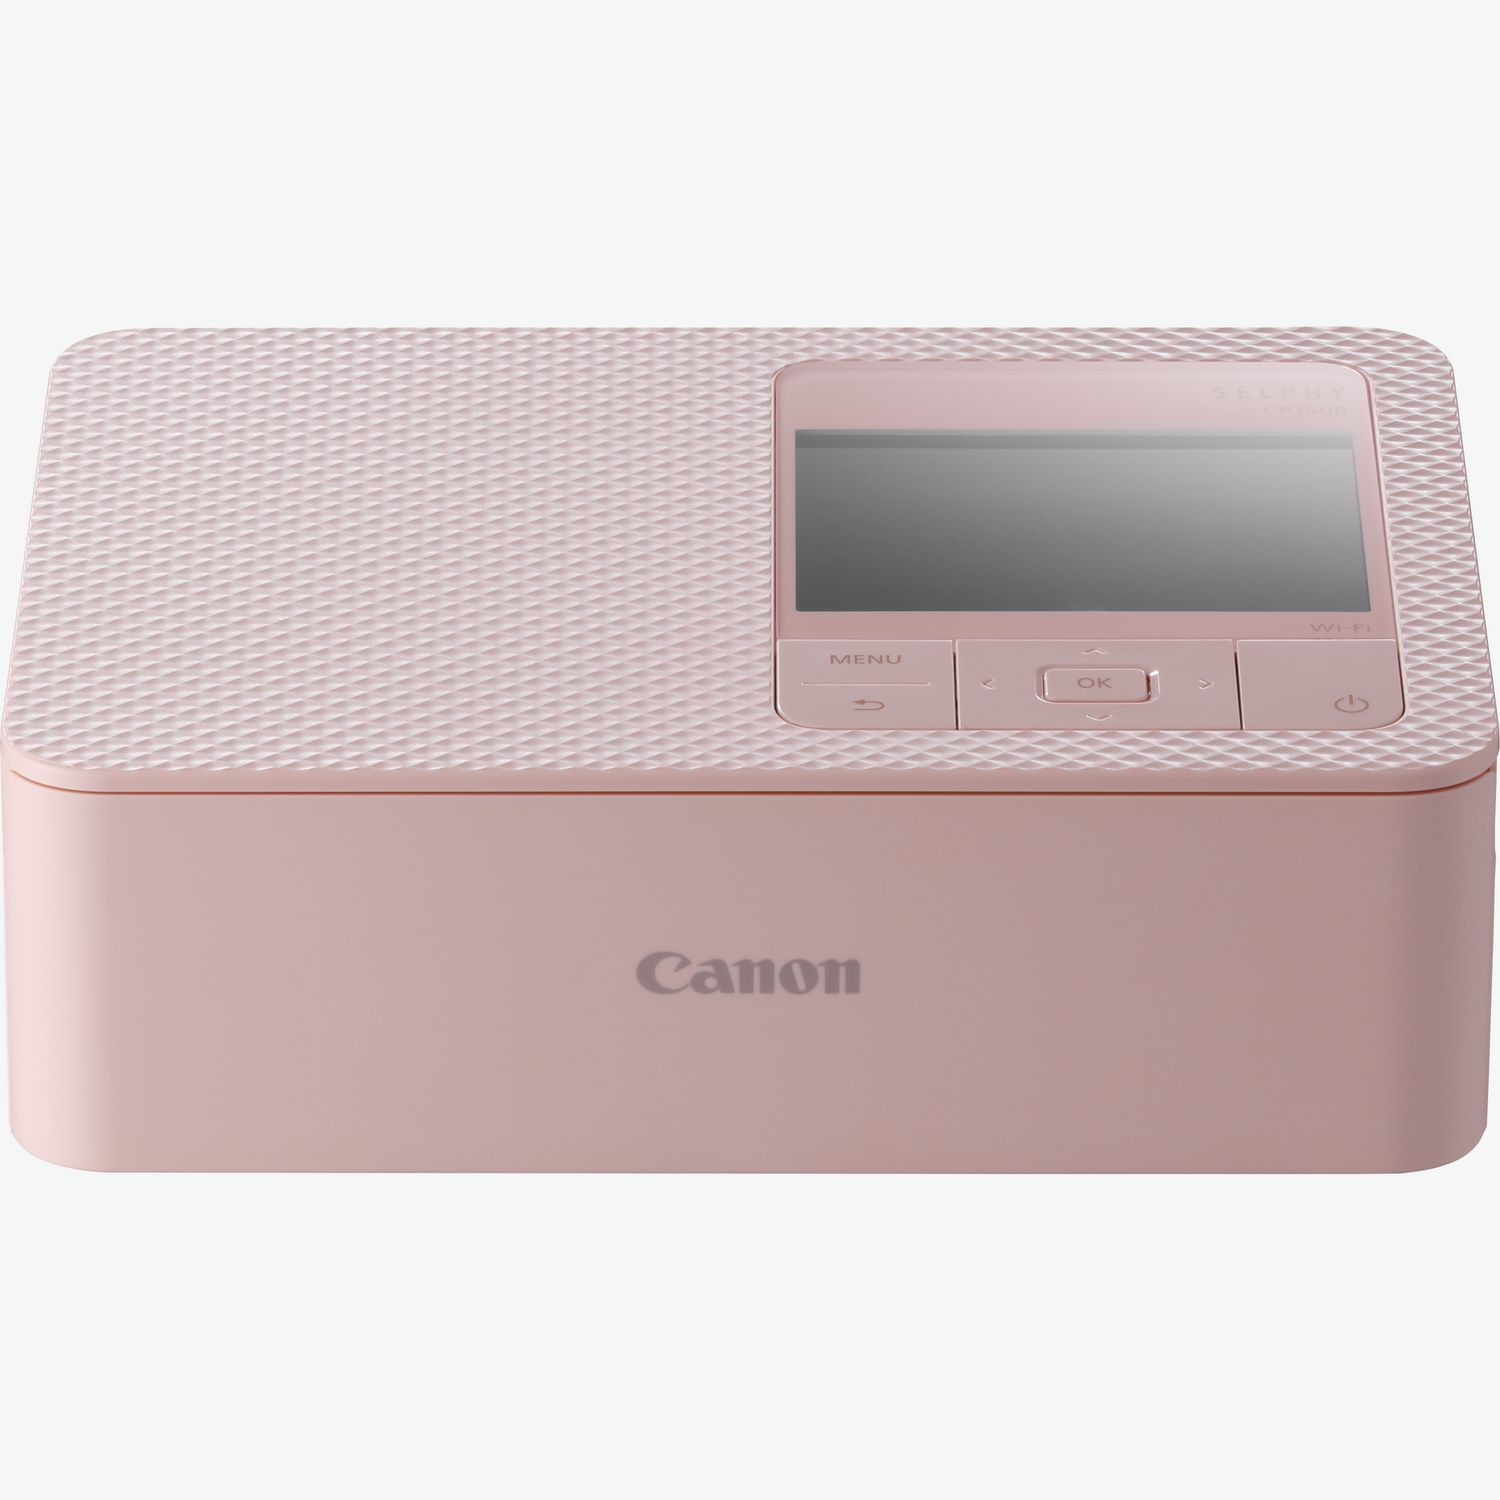 Canon Ivy Mini Photo Printer, stampante portatile in formato 5 x 7,6 cm 